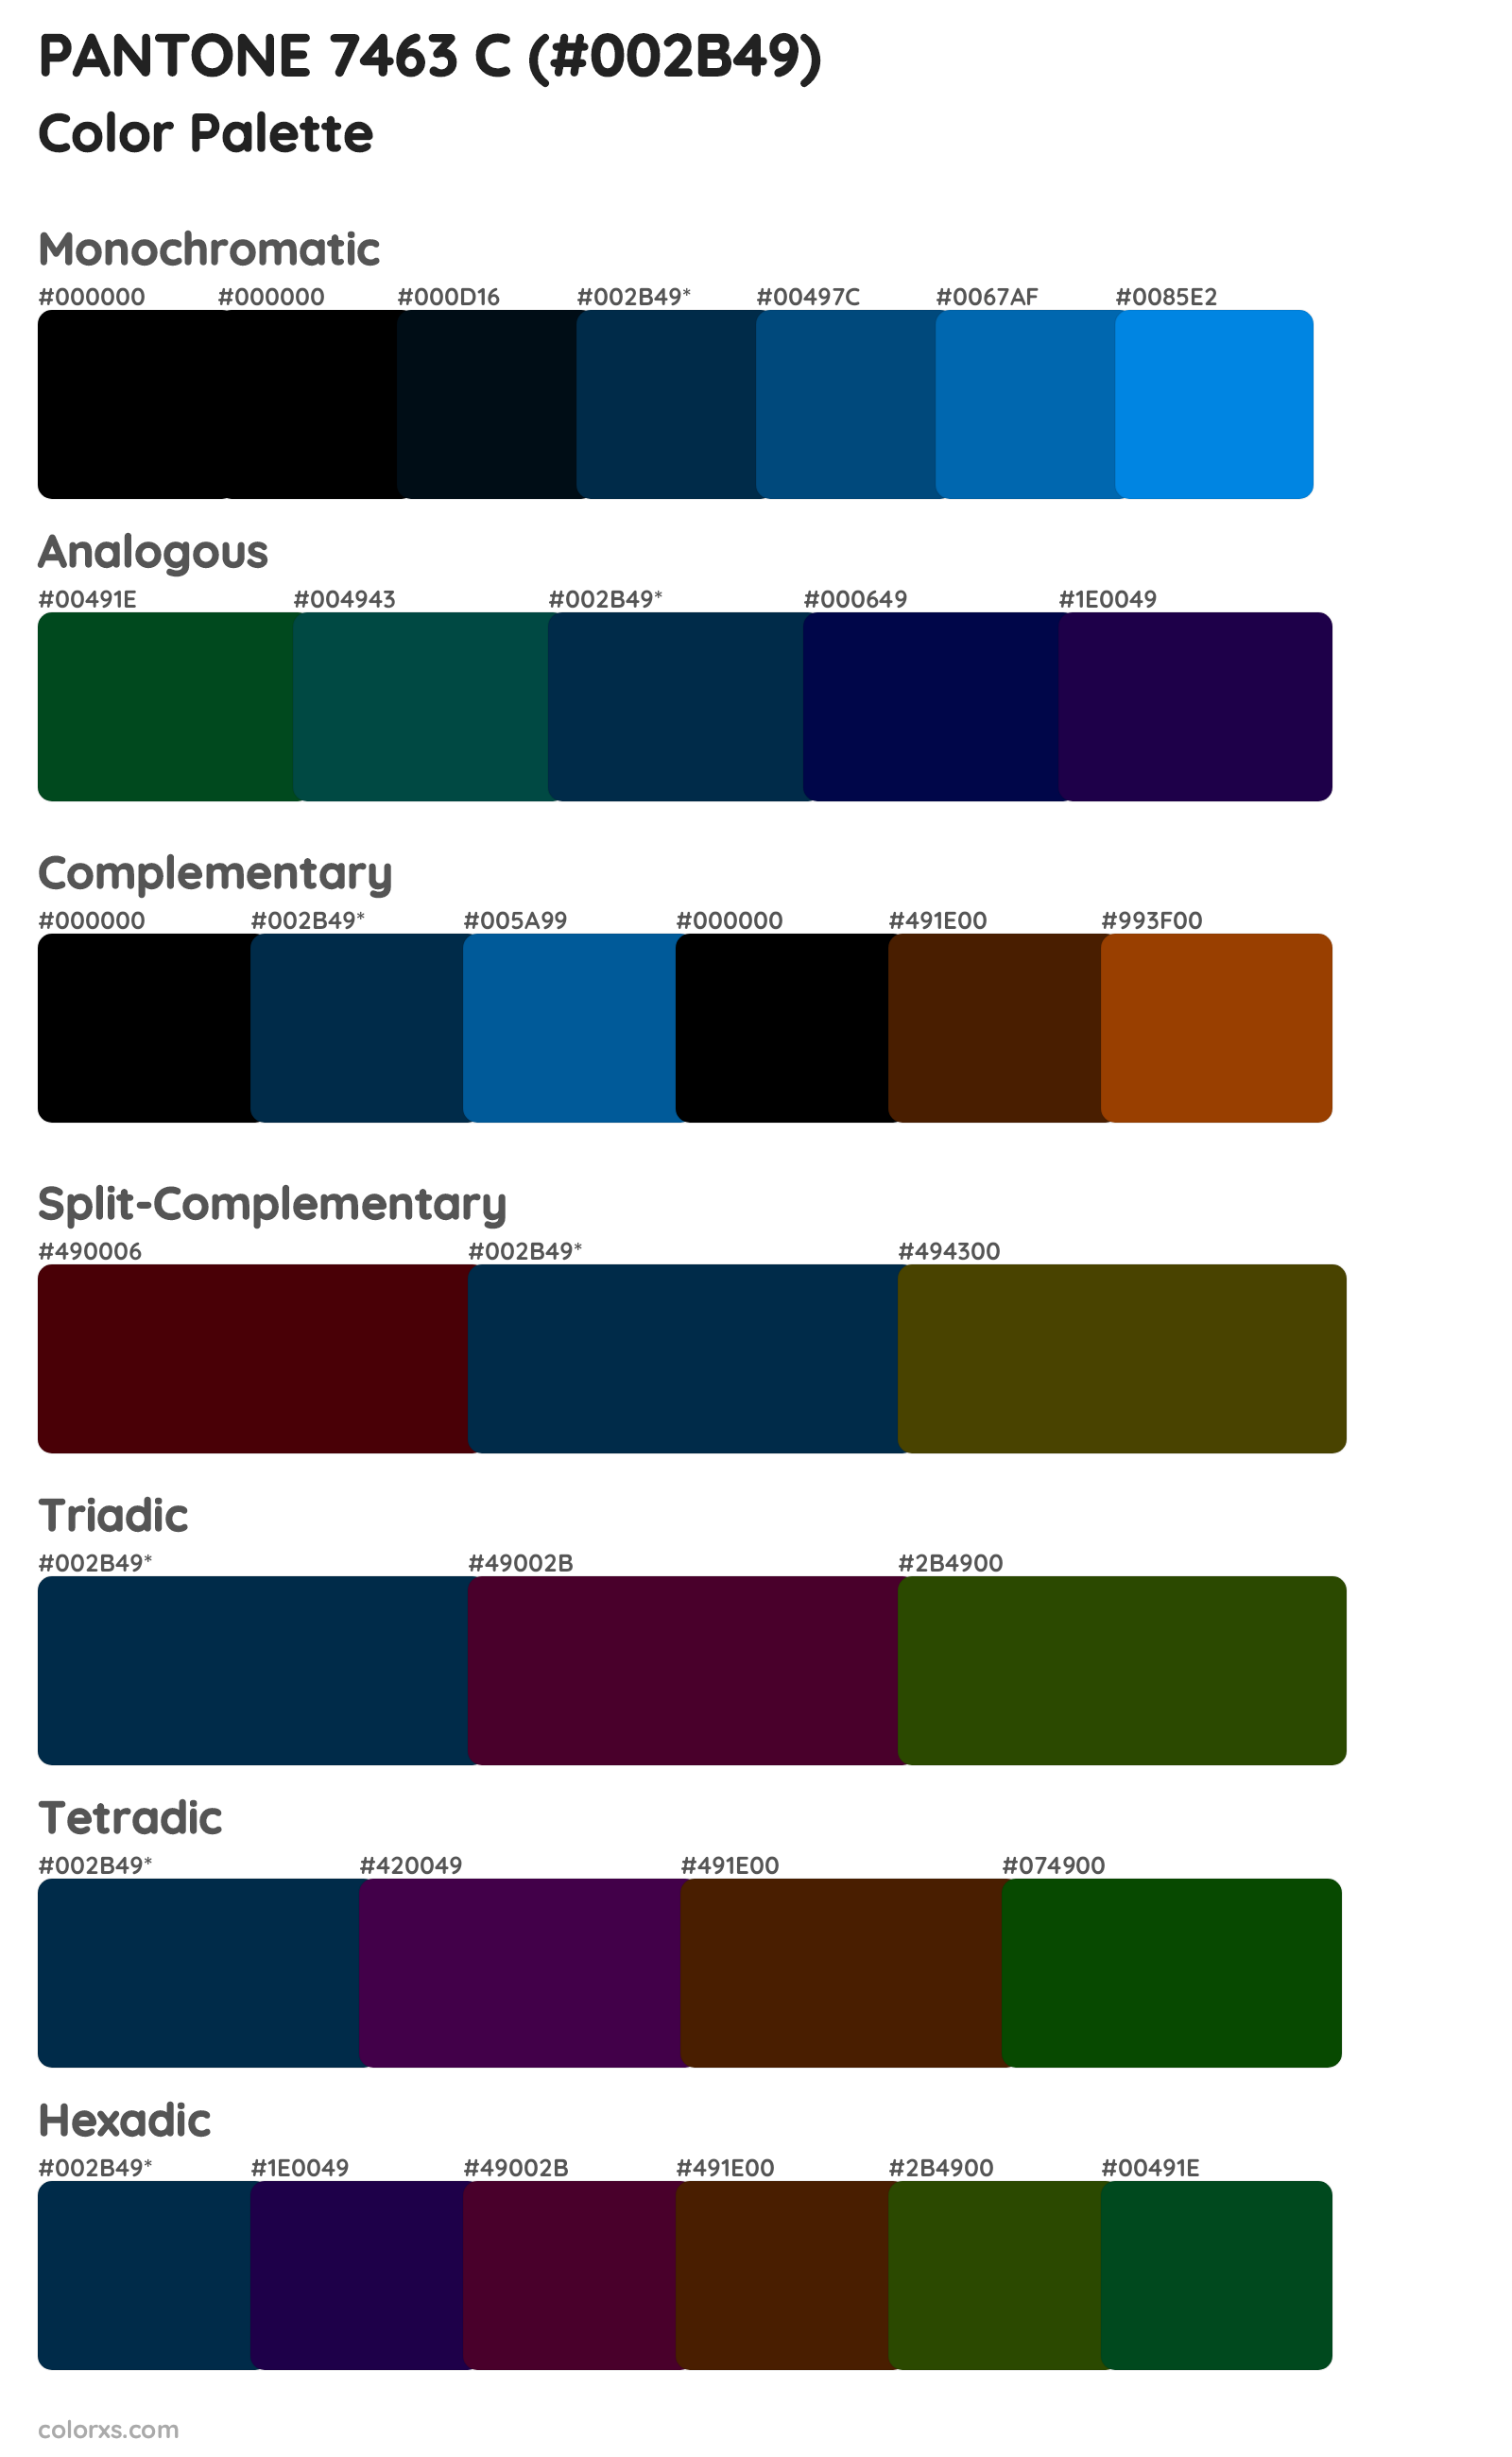 PANTONE 7463 C Color Scheme Palettes